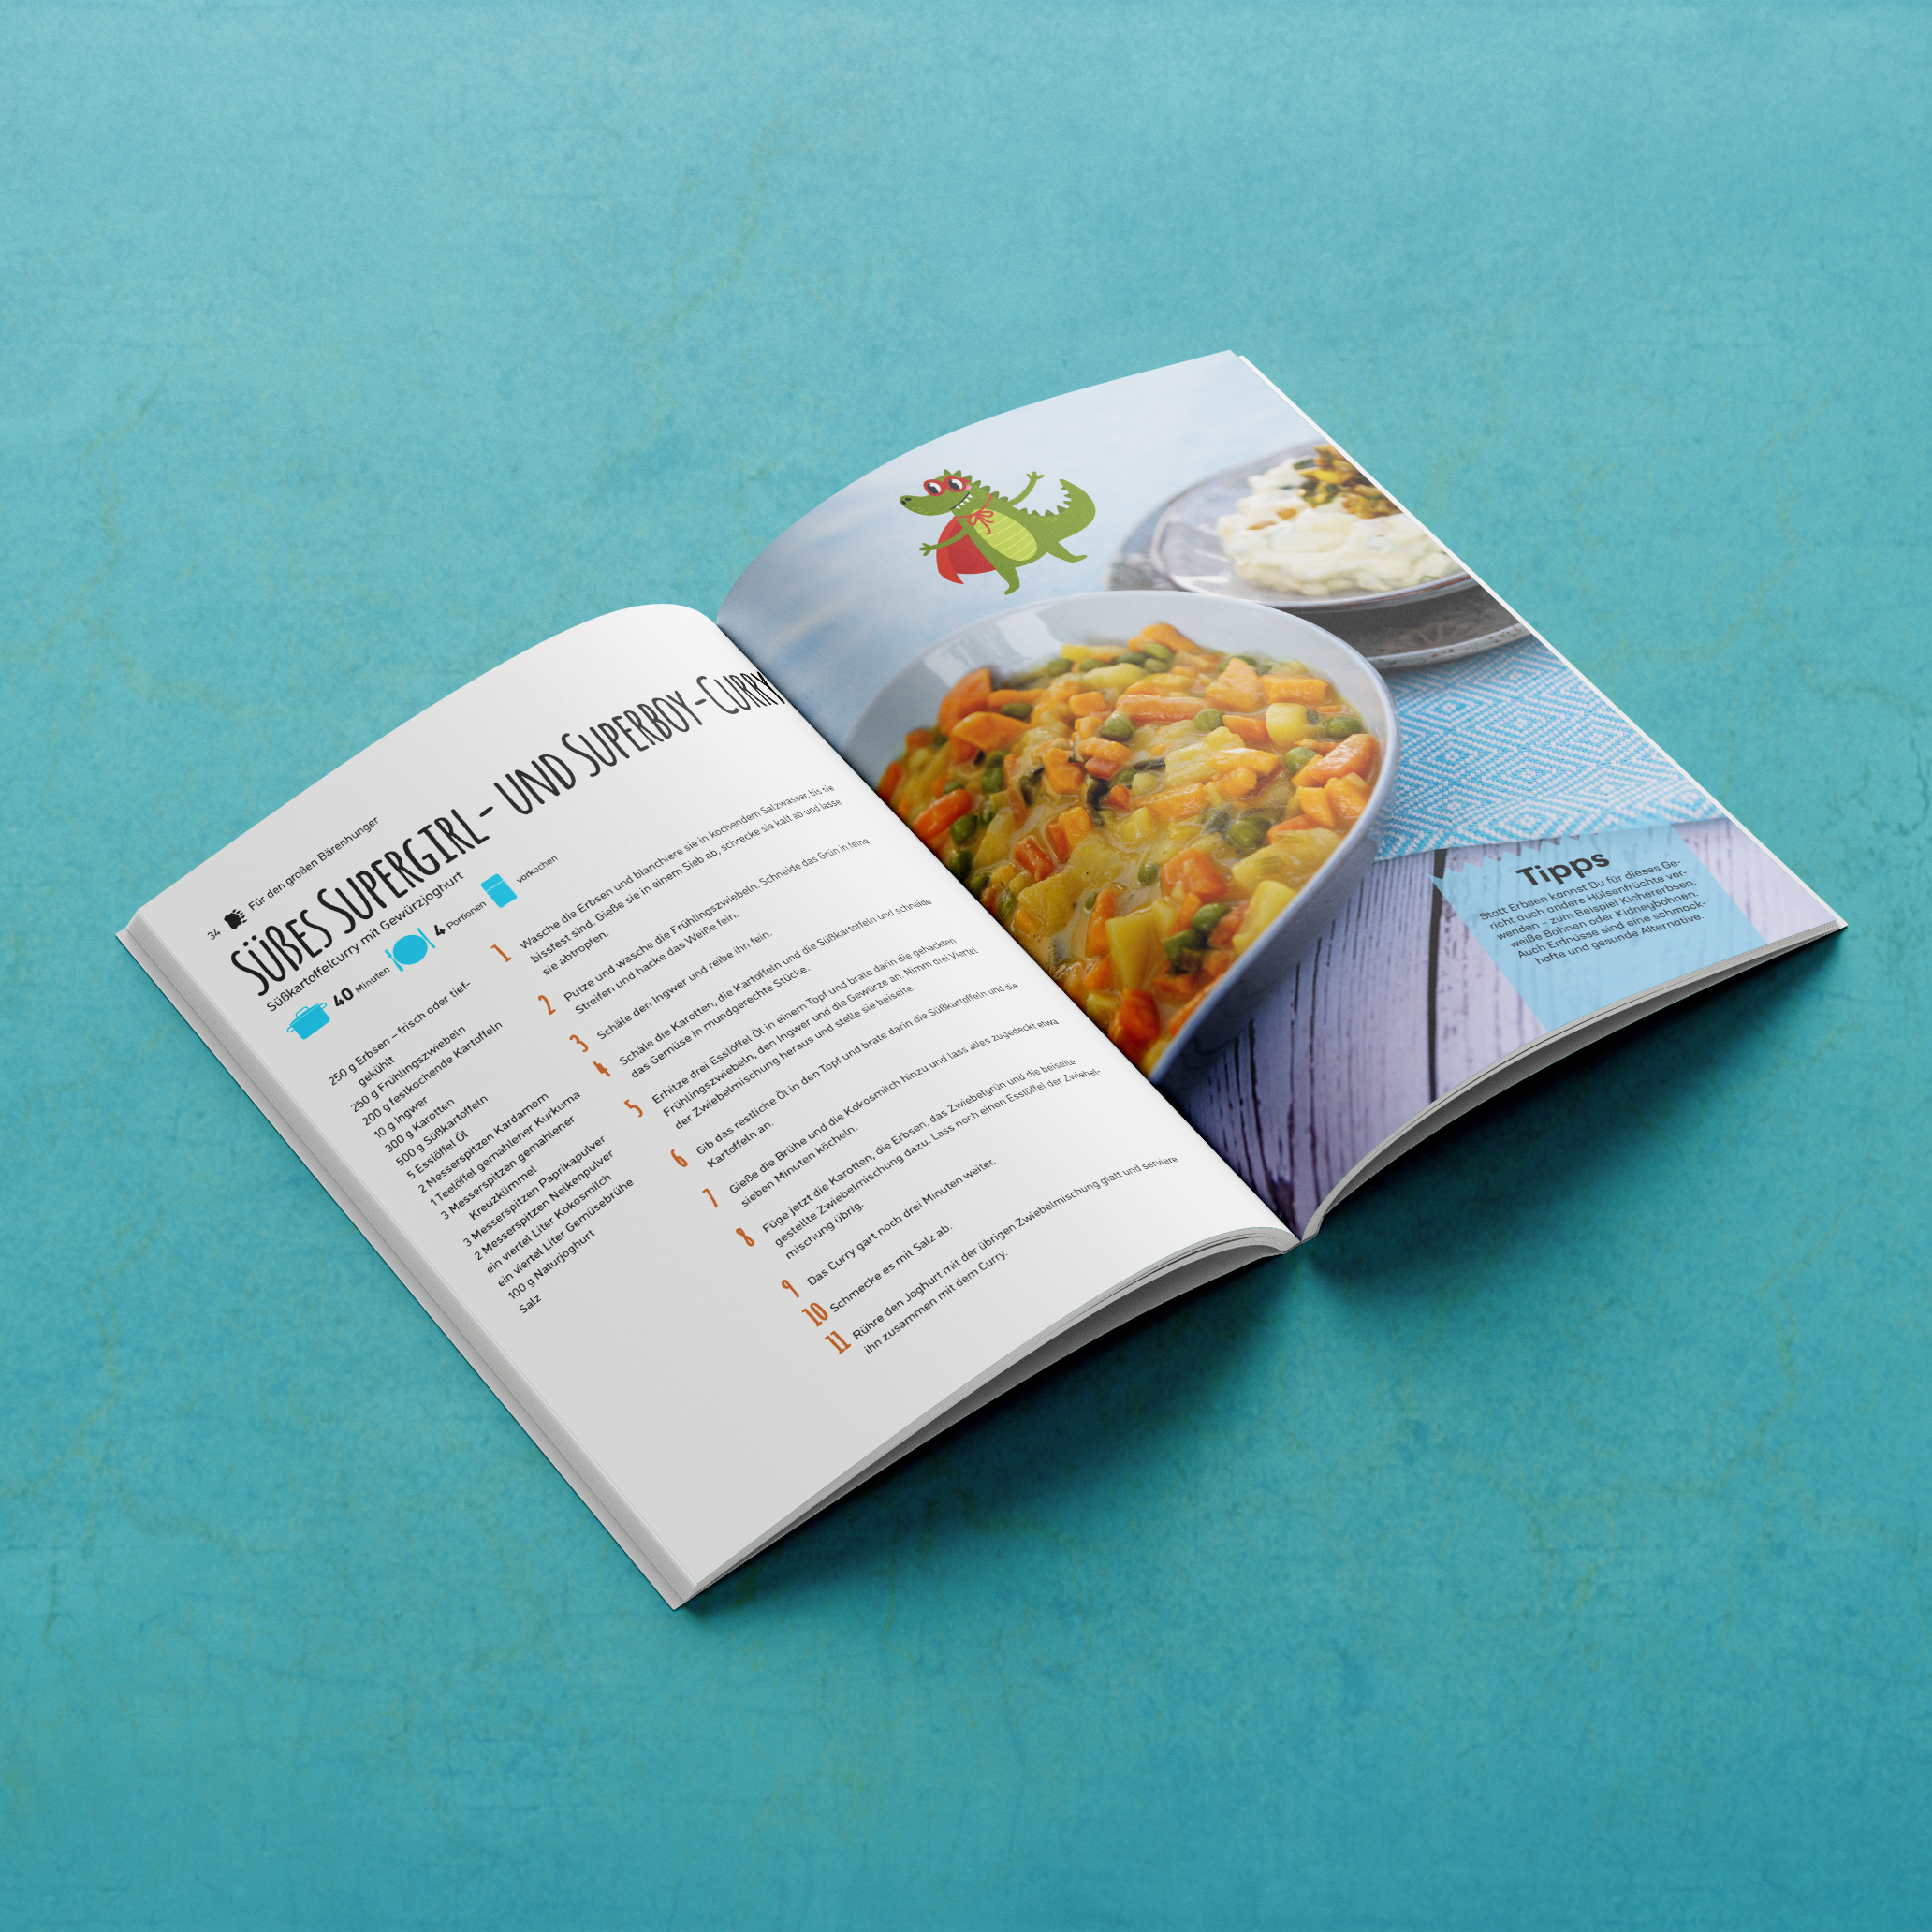 Gesundes essen für Kinder - Hole dir ein Proberezept aus diesem bunten Kochbuch - Free Download - Barbara Lachner - Autorin und Fotografin - Barbara Lachner Blog-Ein Kochbuch voller Lieblingsrezepte für Kinder, die gesundes Essen lieben werden!
Gesunde Ernährung im Familienalltag – ein wahres Abenteuer!
Kennst du das auch?
Du hast für deine Kinder gekocht, und sie verweigern das Gemüse? Am liebsten würden sie nur Nudeln oder Pommes essen? Du machst dir Gedanken, dass sie zu wenig Gesundes zu sich nehmen?
Diese Gedanken hast du zurecht!
Schluss mit dem ewigen Kampf am Esstisch und den langweiligen Fertiggerichten!
Dieses einzigartige Kochbuch vereint die Lieblingsrezepte vieler Eltern und bietet eine bunte Palette an einfachen, schnellen und gesunden Gerichten, die mit einer Extraportion Superpower aufwarten.
